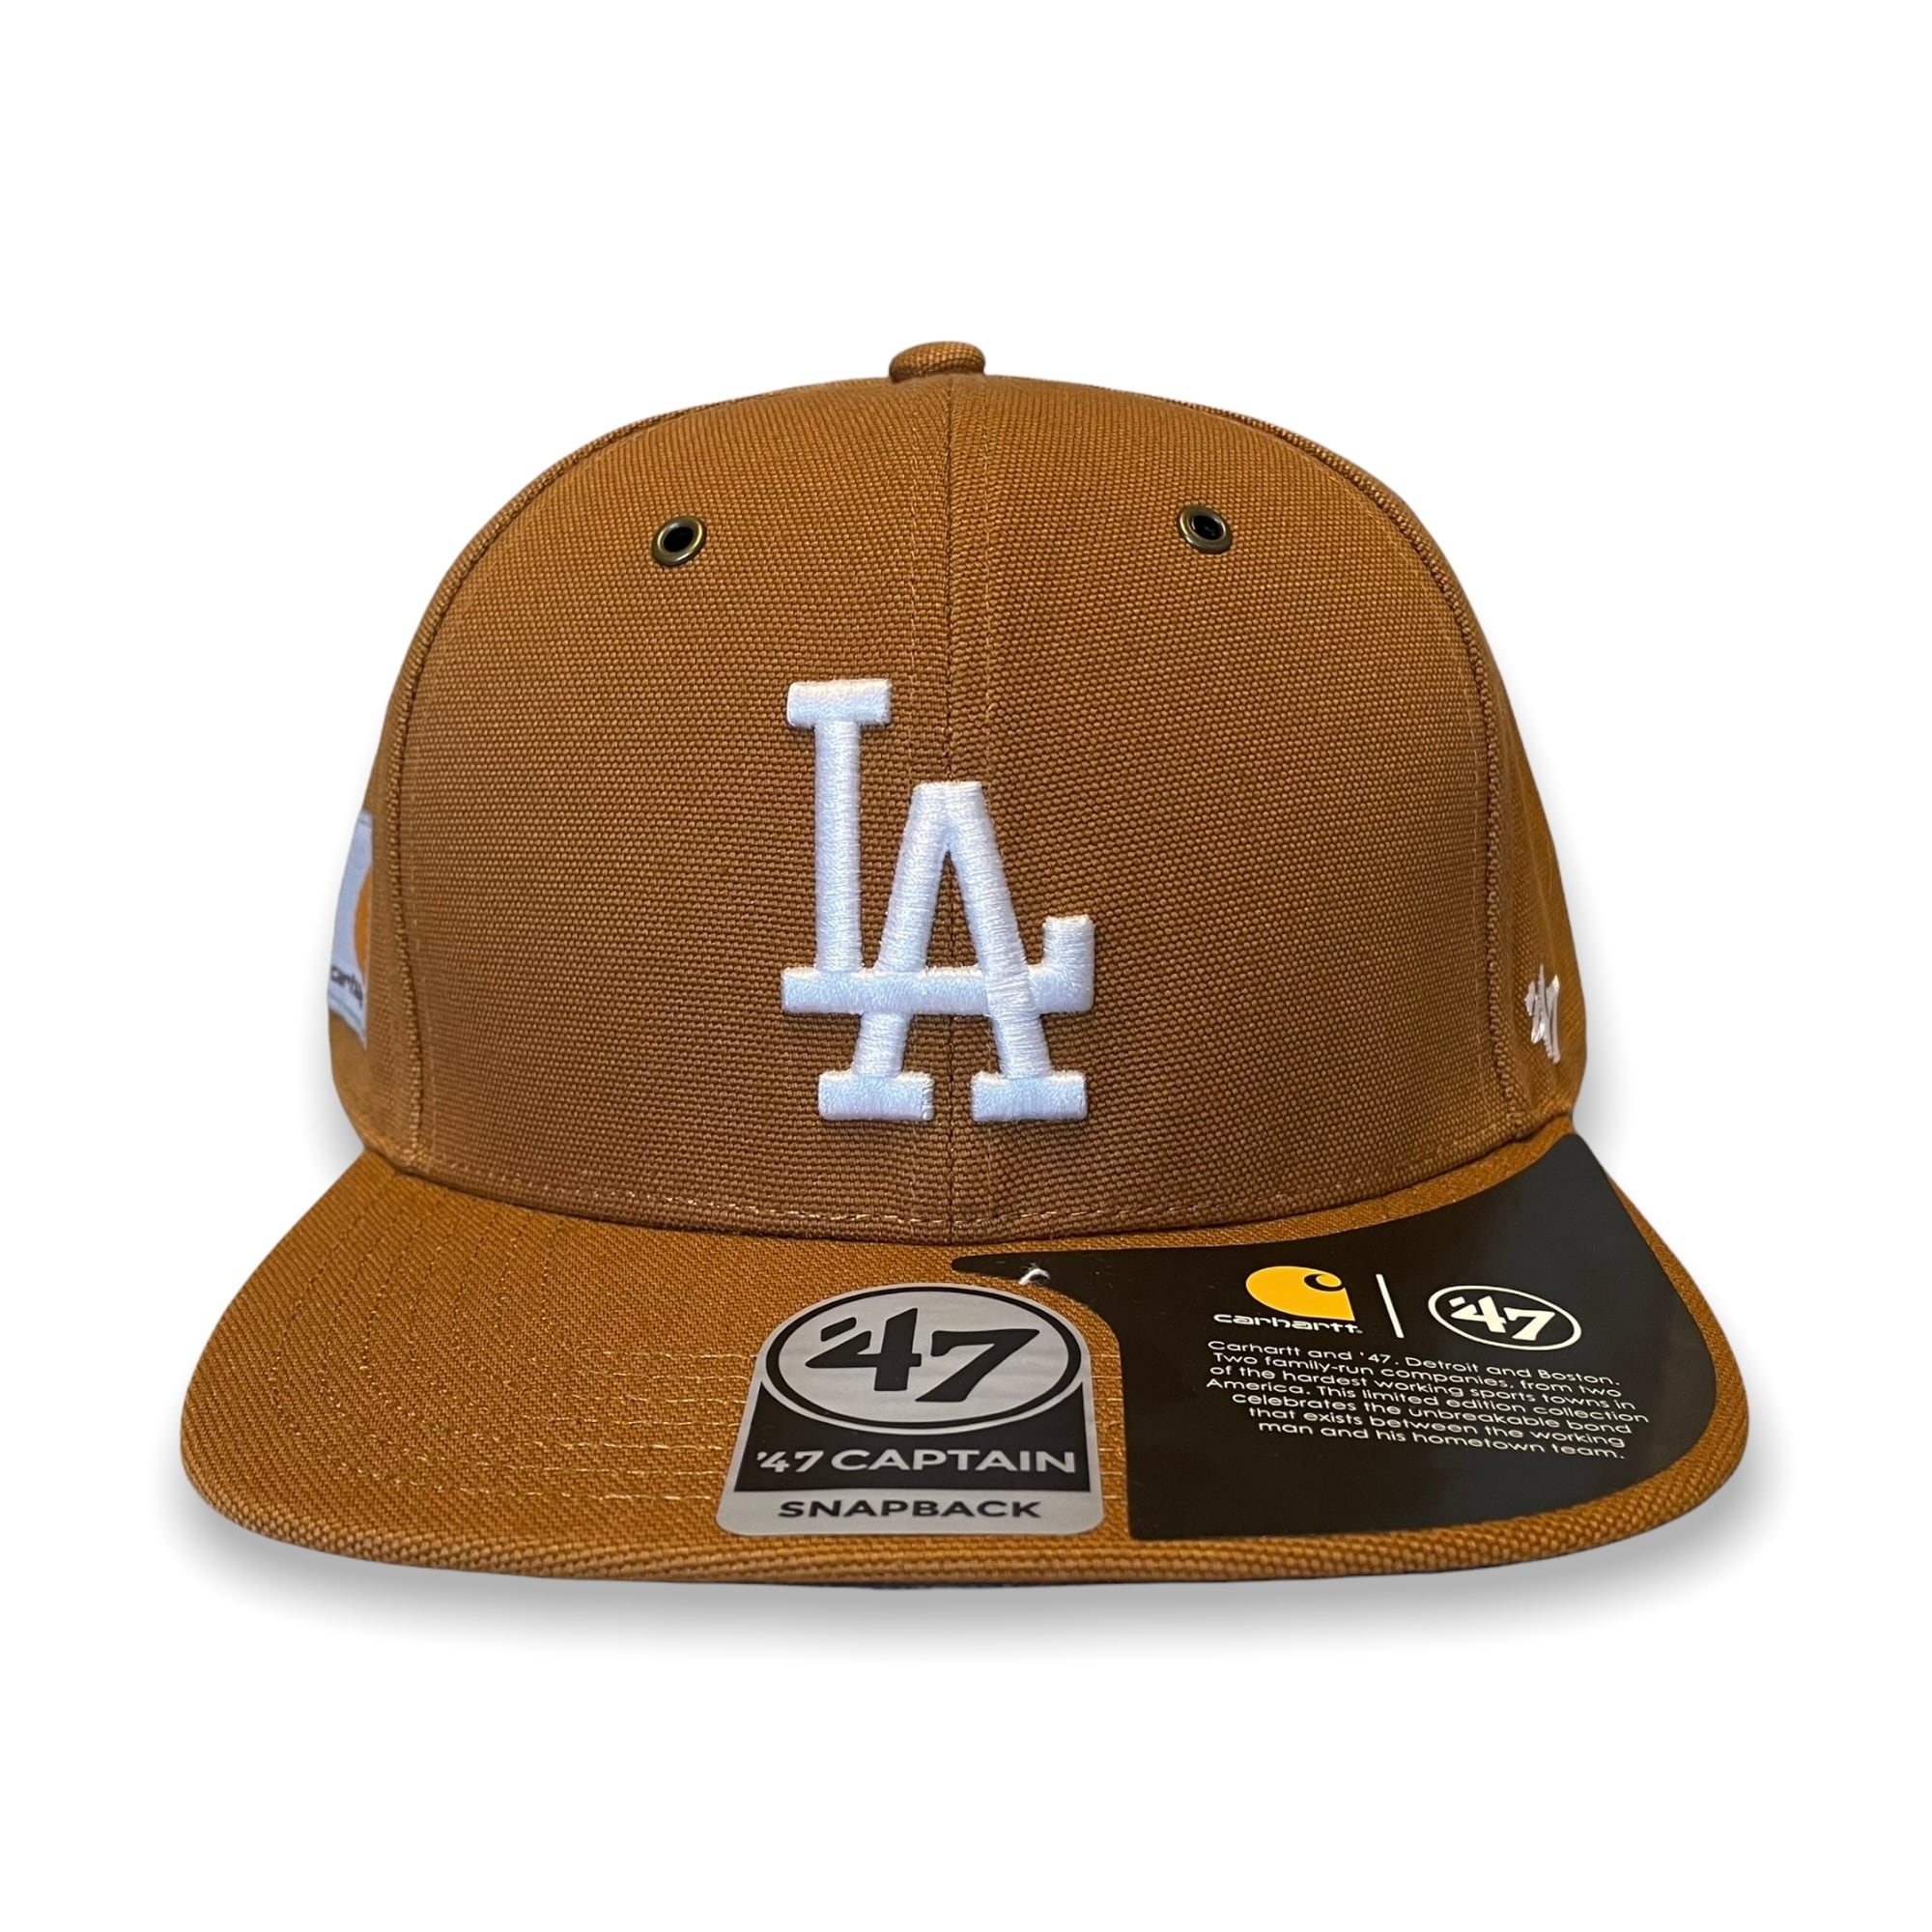 カーハート×'47★ブラウン LA ロサンゼルスドジャース キャップ 帽子